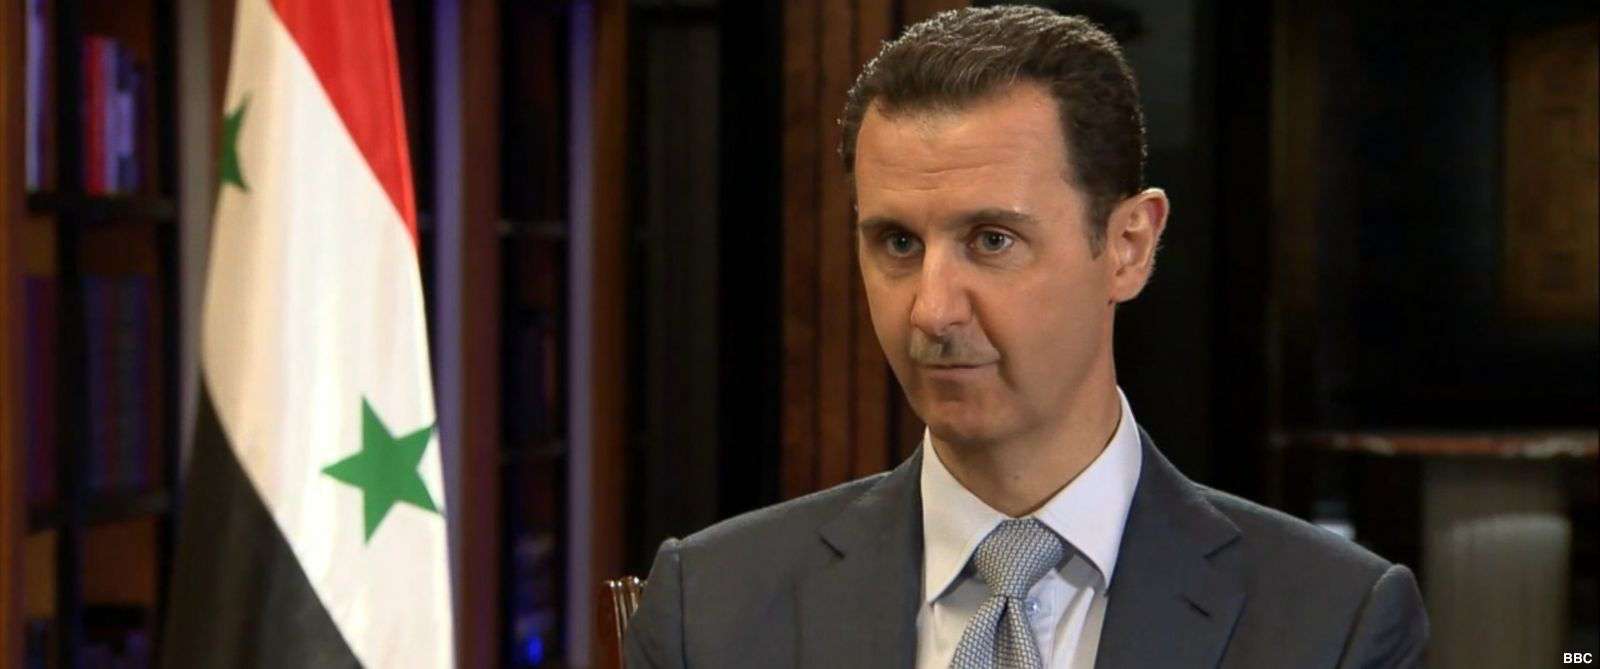 Ο Άσαντ λέει πως οι επιχειρήσεις στη Γούτα θα συνεχιστούν